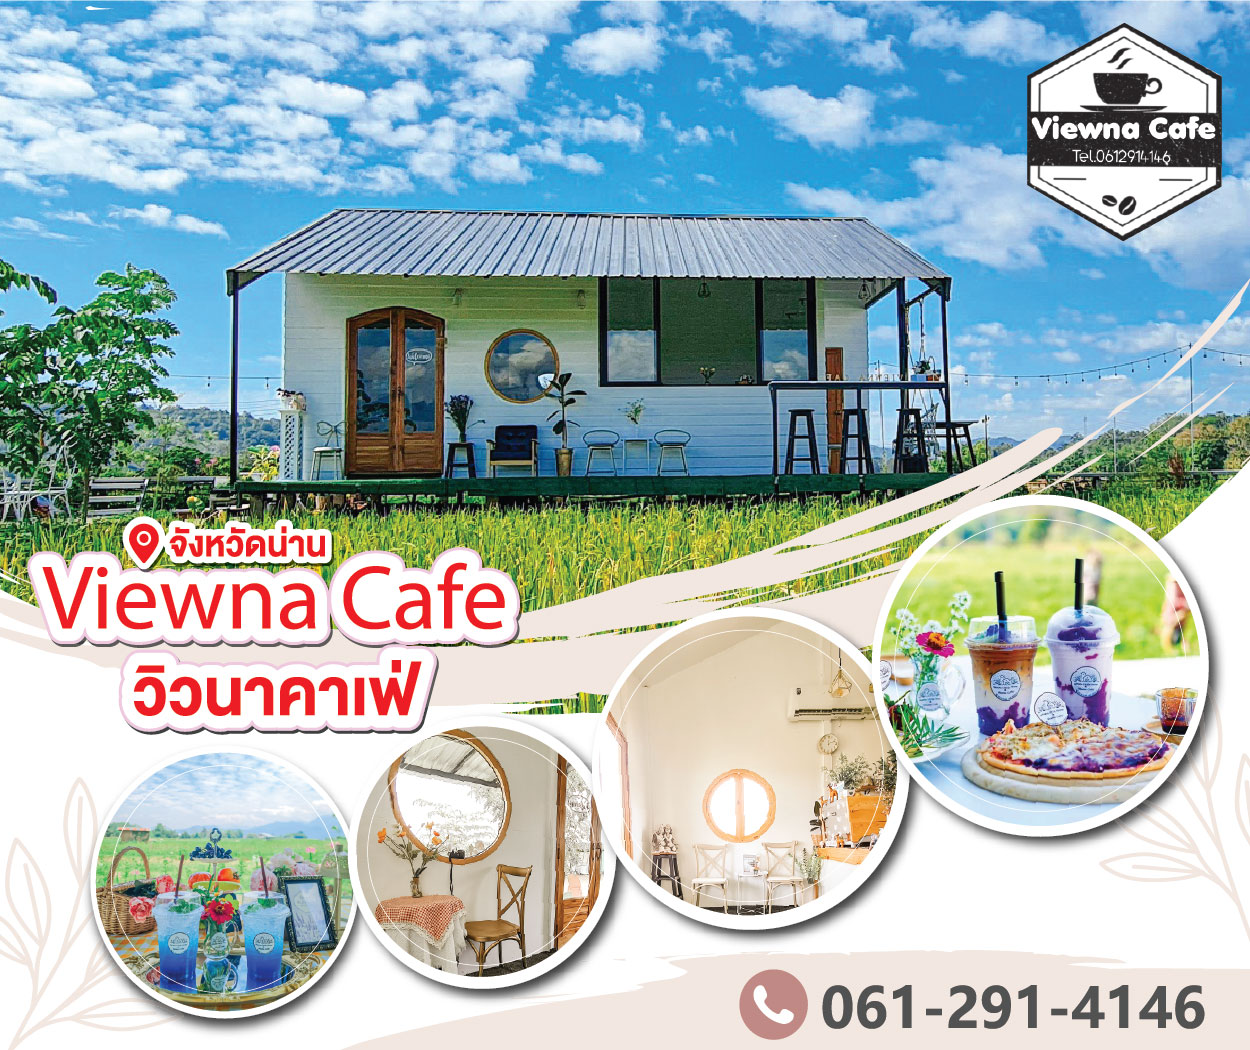 Viewna Café, Nan